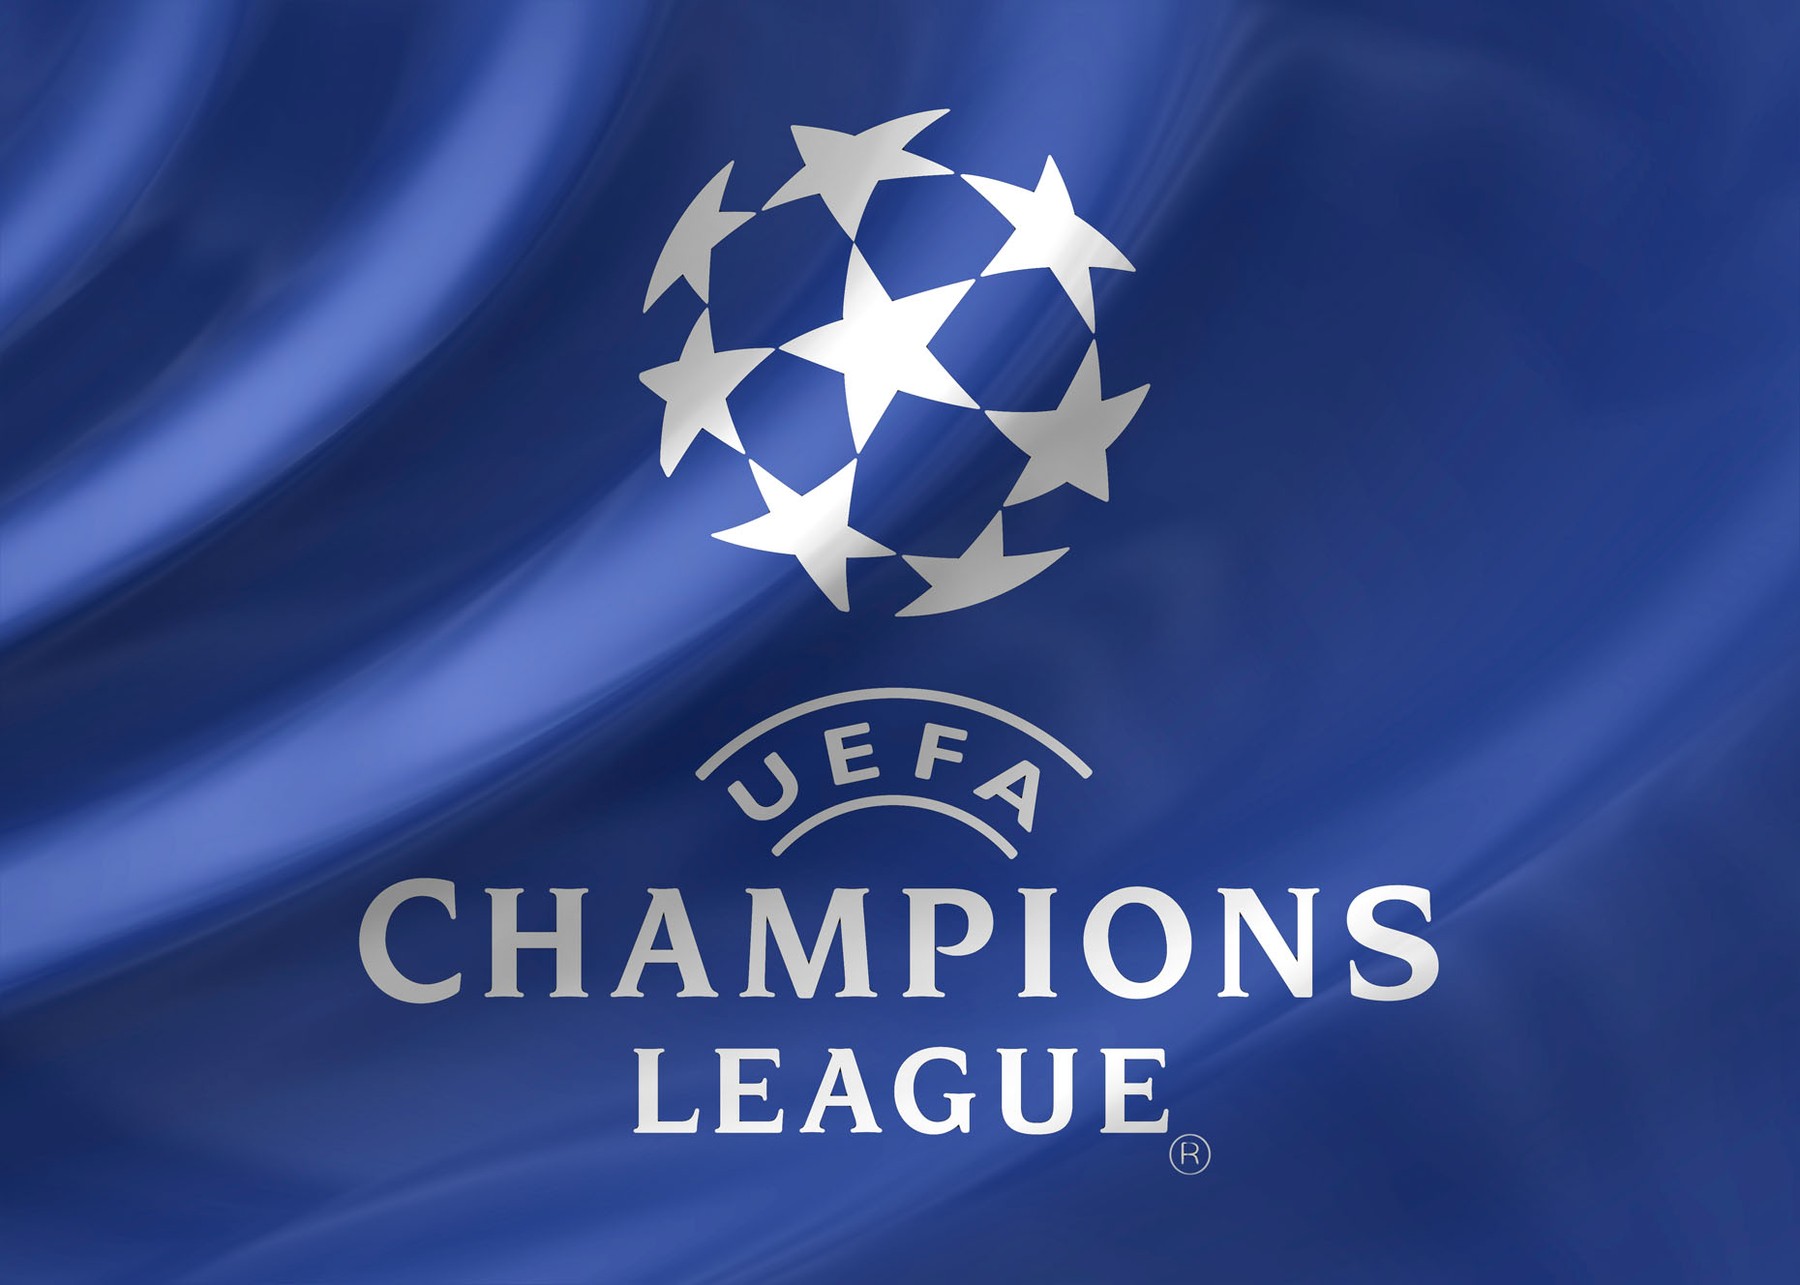 Федерация уефа. UEFA Champions League. Логотип ЛЧ. Эмблема Лиги чемпионов УЕФА. Логотип ЛЧ УЕФА.